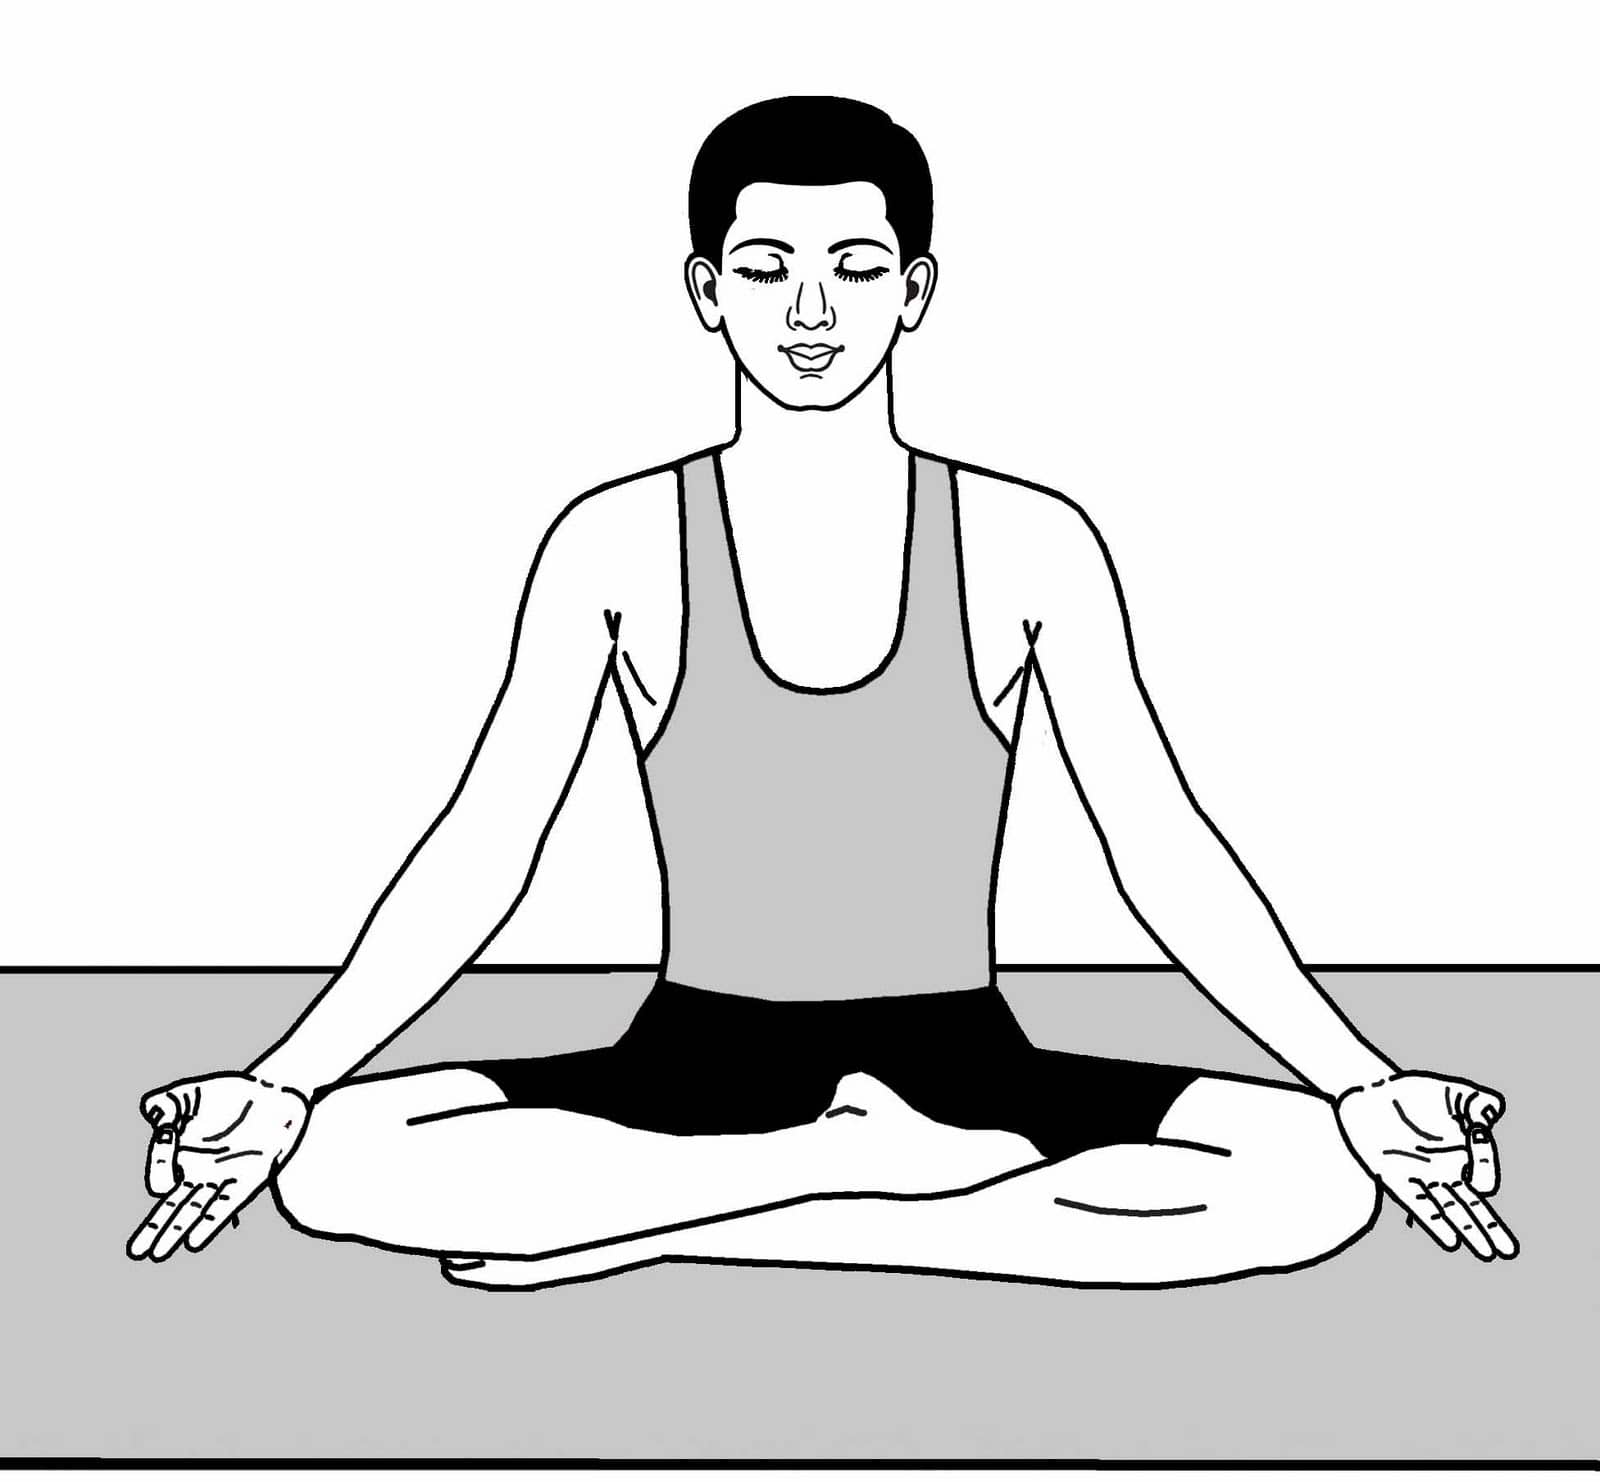 Хатха йога — что это такое?